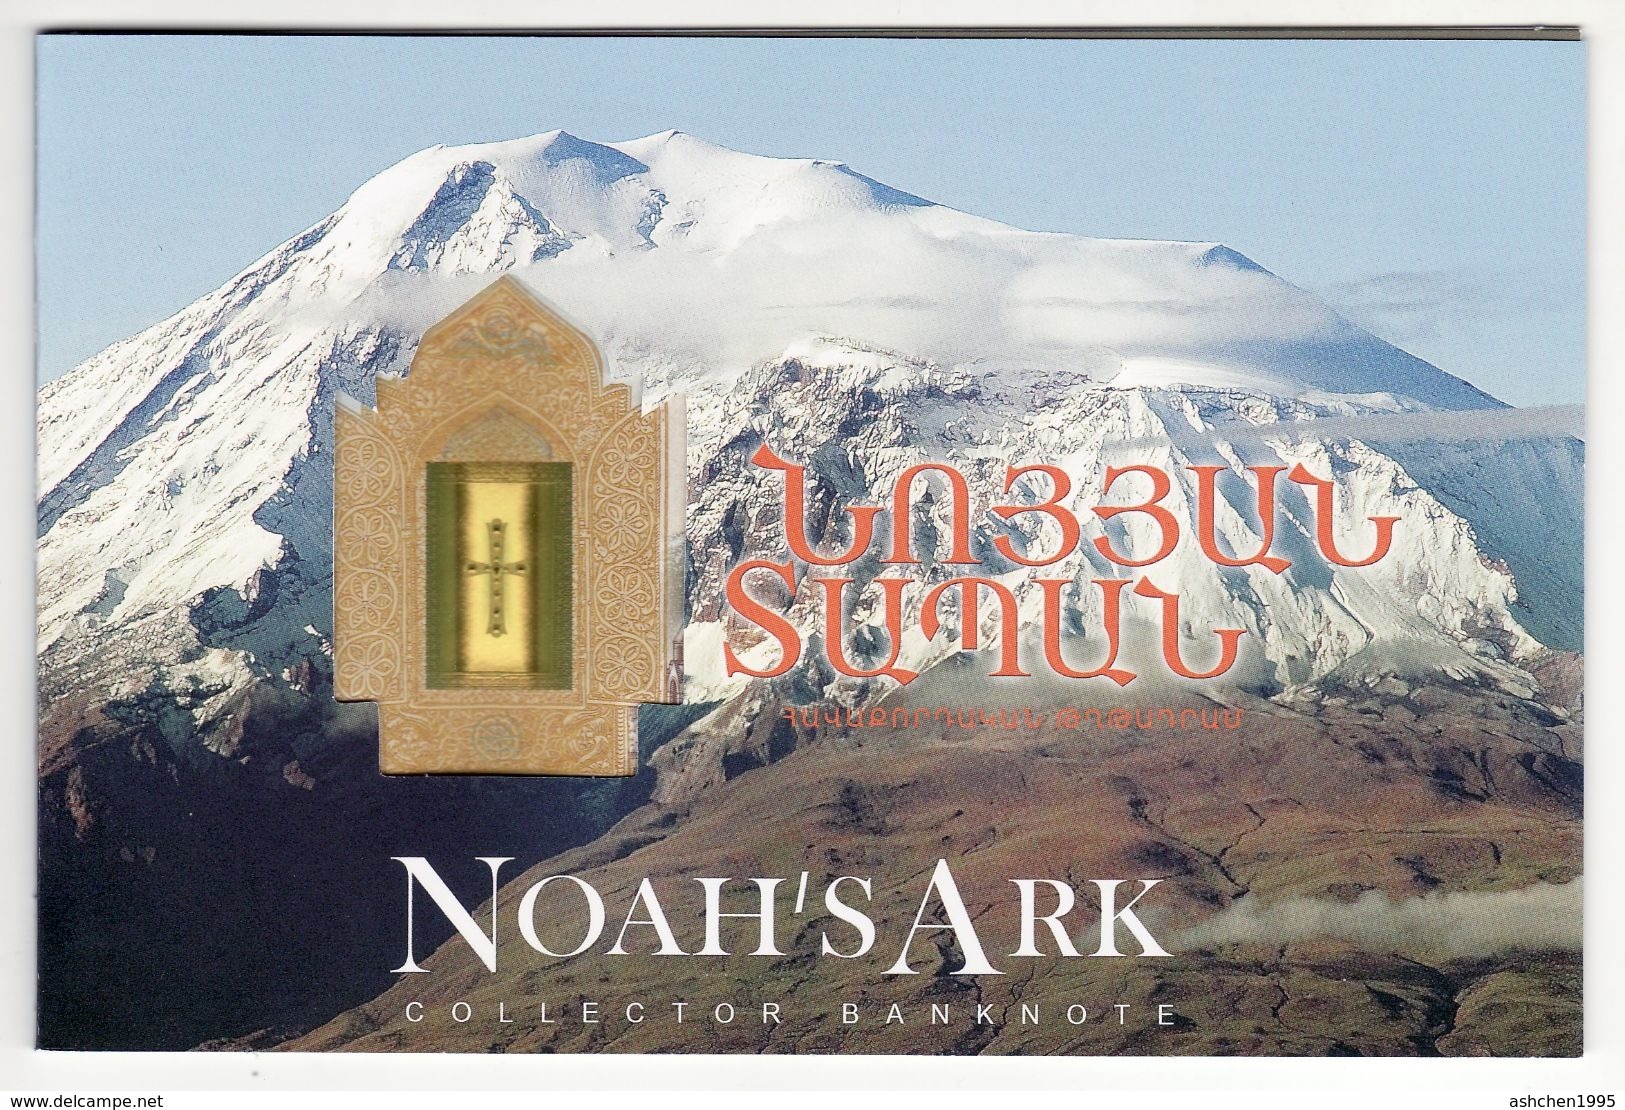 Armenien / Armenie / Armenia 2017, Noah's Ark, Collector 3D Banknote  500 Dram, Fauna Church Booklet Cornet UNC - Arménie